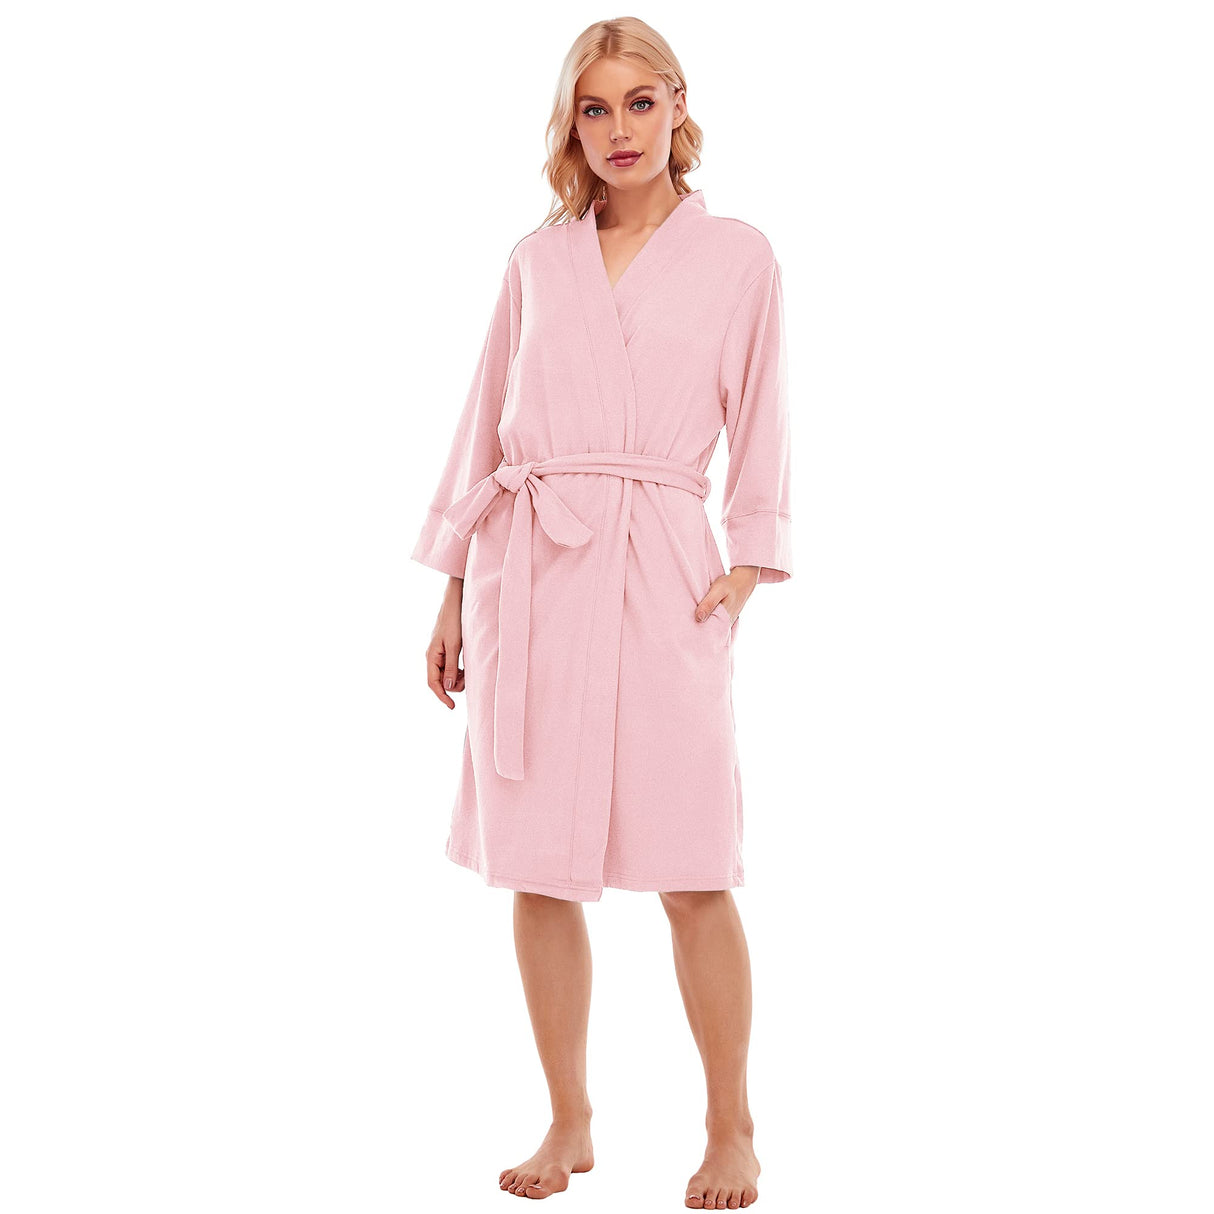 LUBOT Women's Robes Bathrobe Lightweight Microfleece Loungewear Pink - GexWorldwide